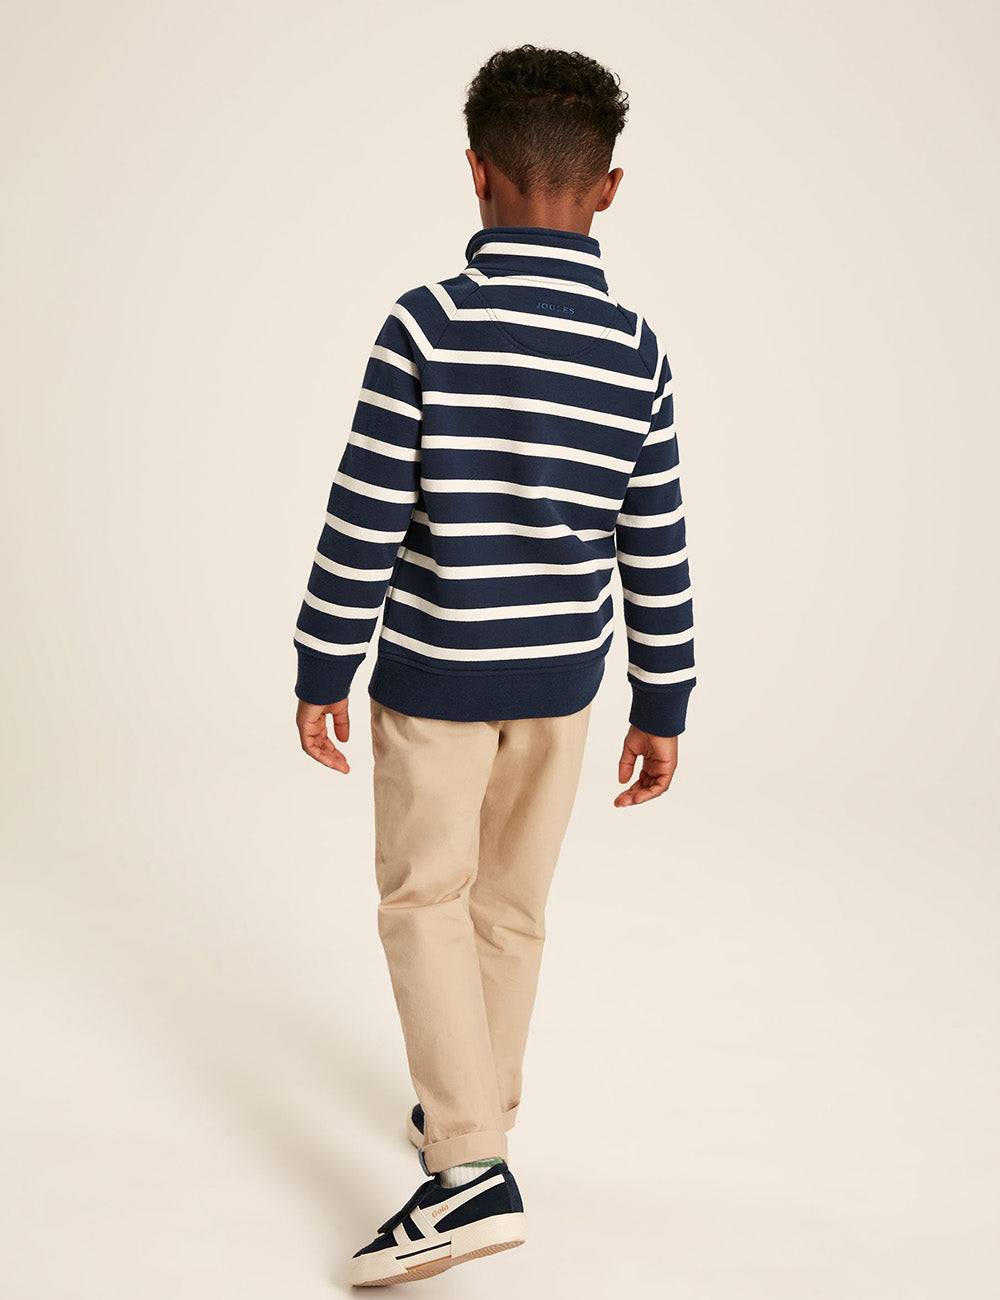 Joules Finn 1/4 Zip Sweatshirt - French Navy Stripe